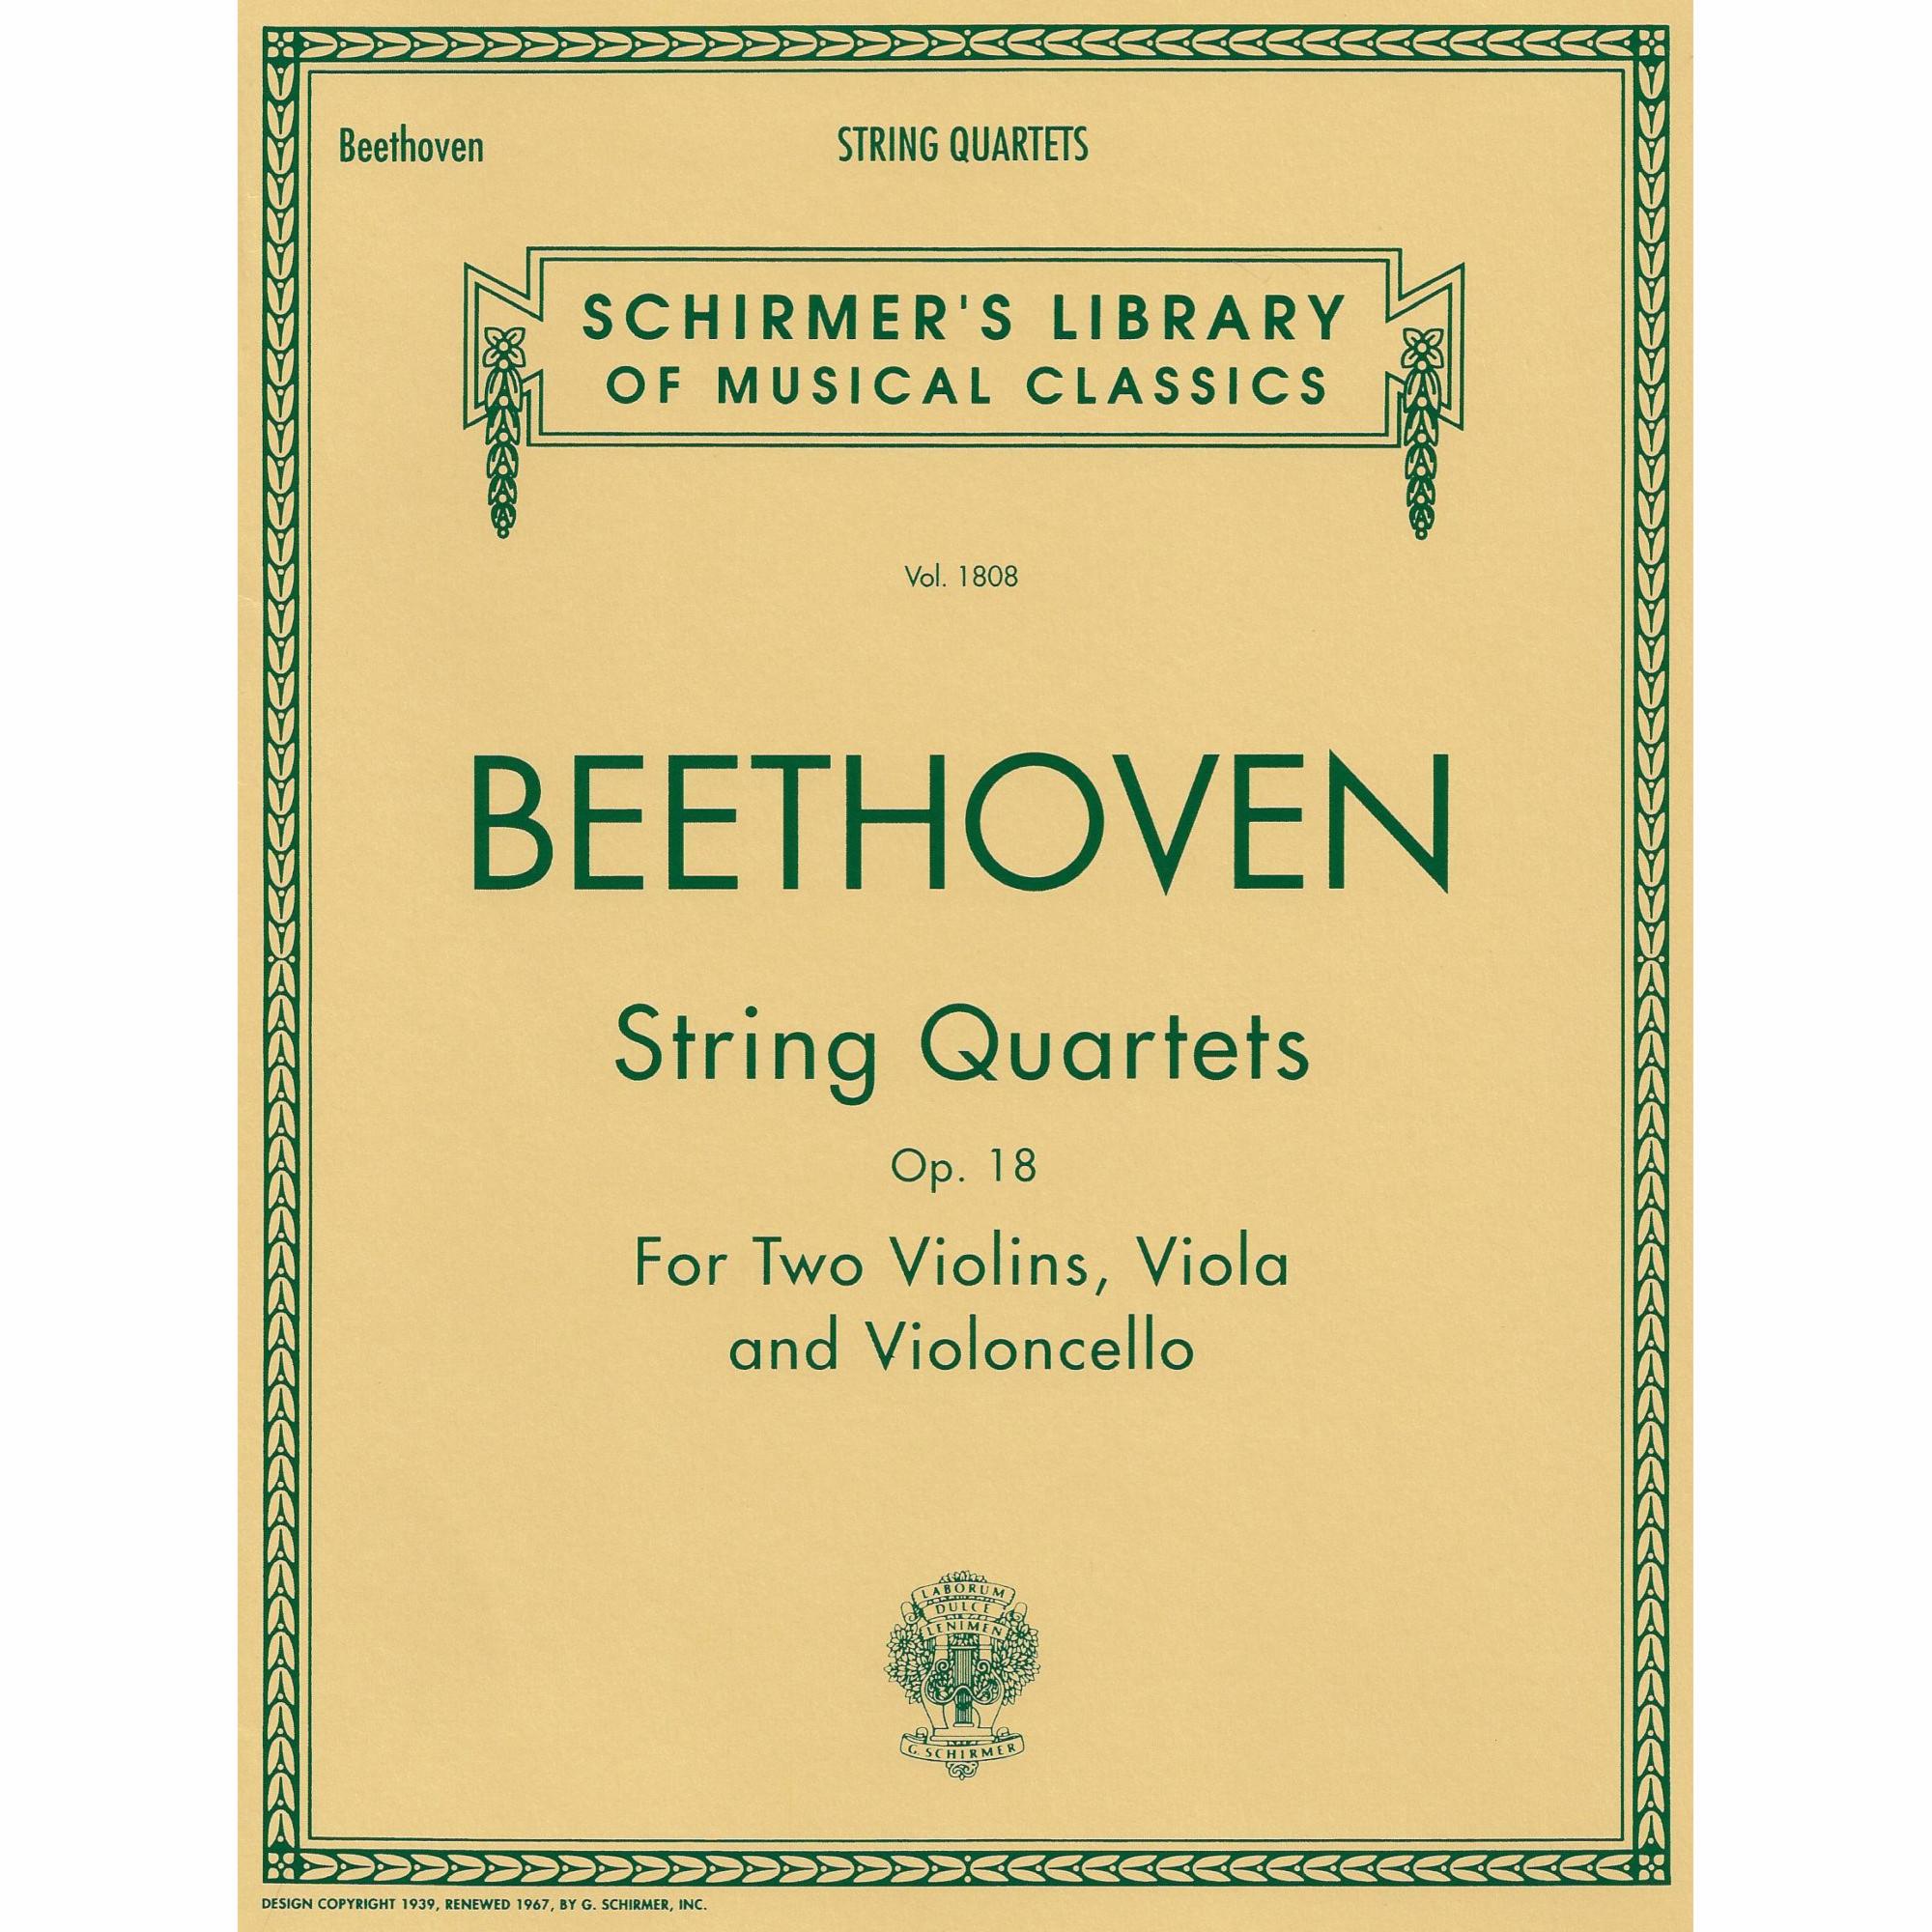 Beethoven -- String Quartets, Op. 18